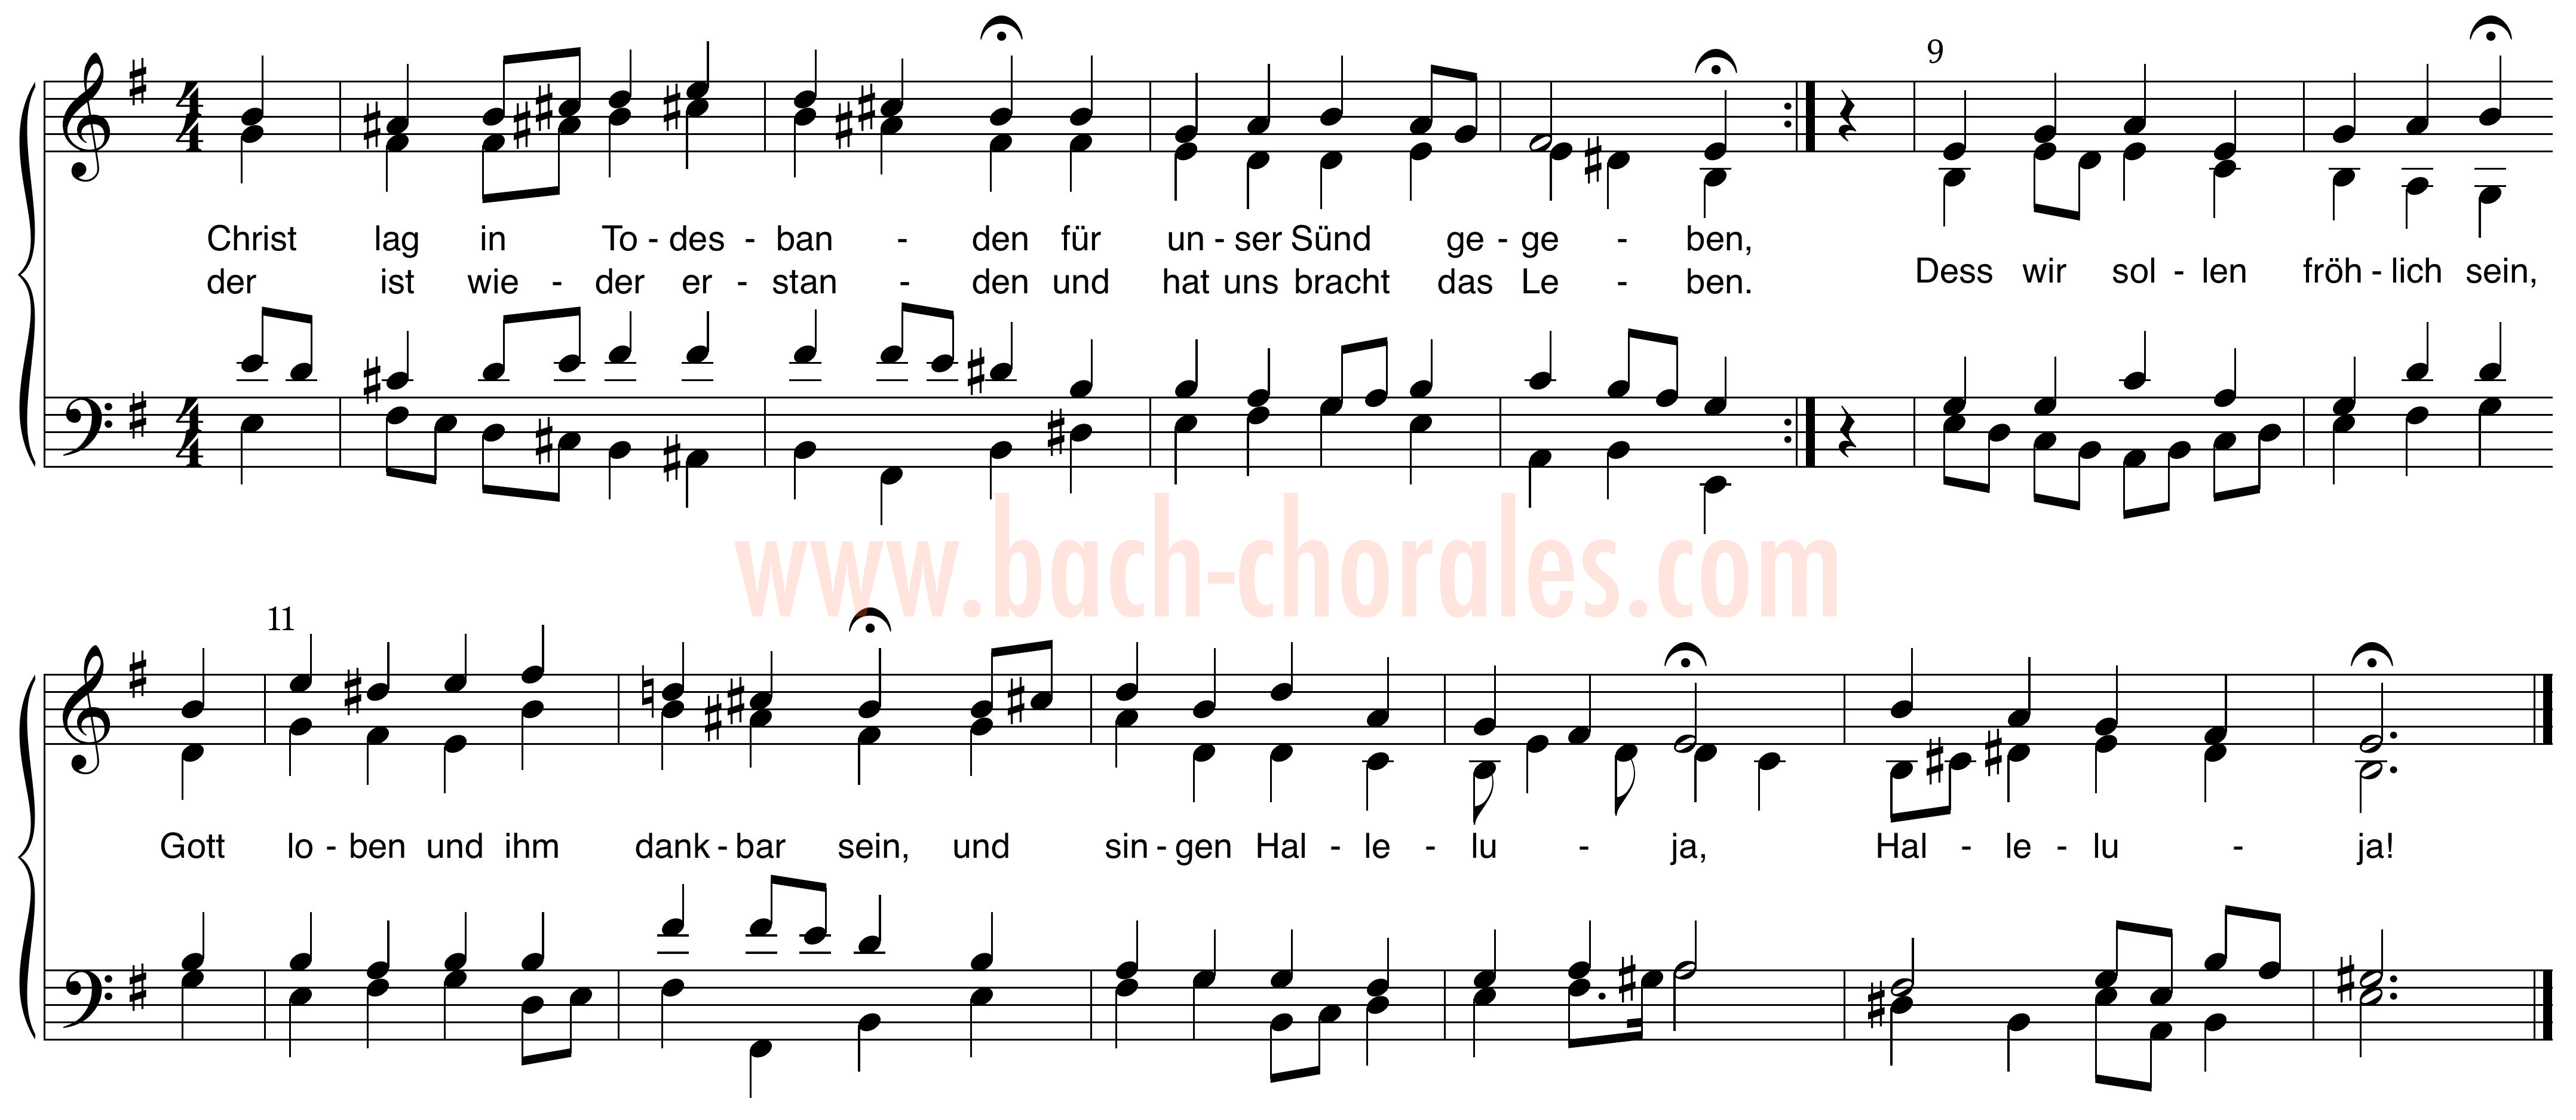 notenbeeld BWV 279 op https://www.bach-chorales.com/